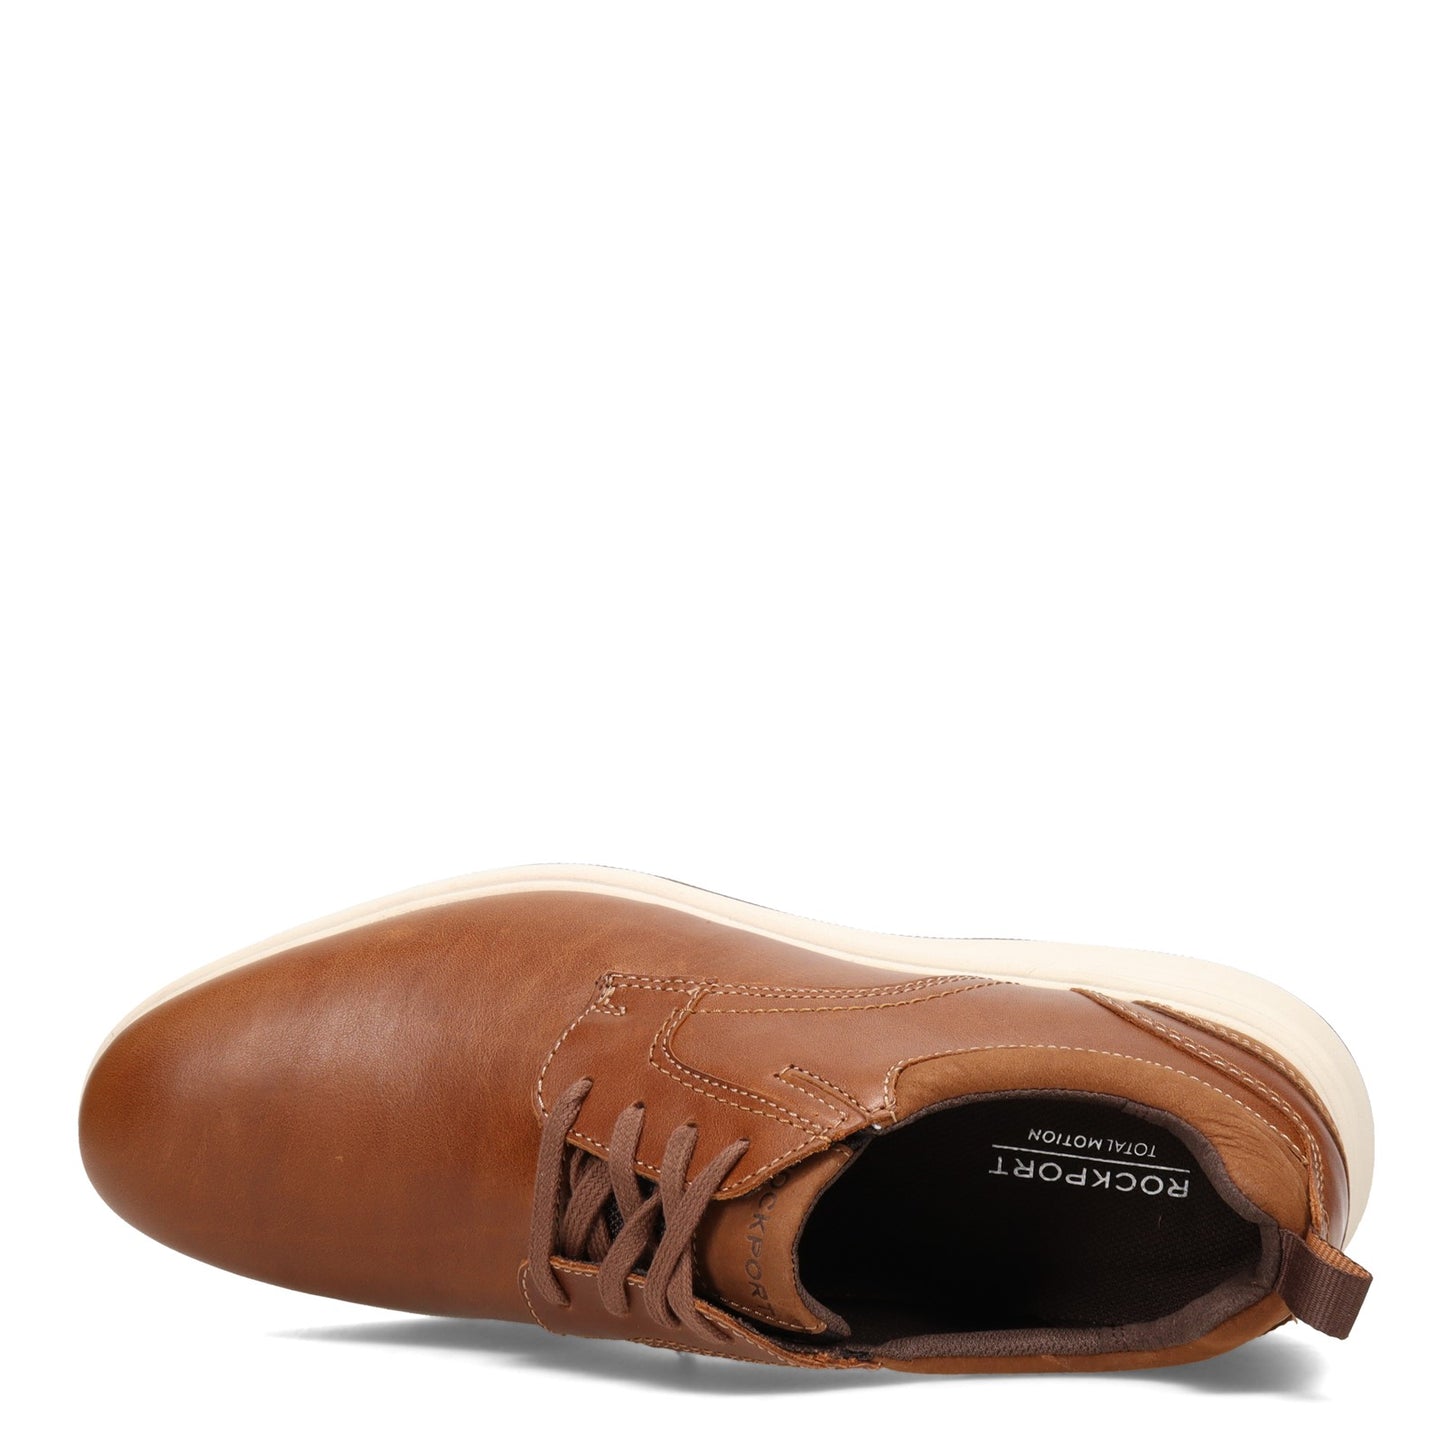 Peltz Shoes  Men's Rockport Total Motion City Plain Toe Oxford TAN CI5638